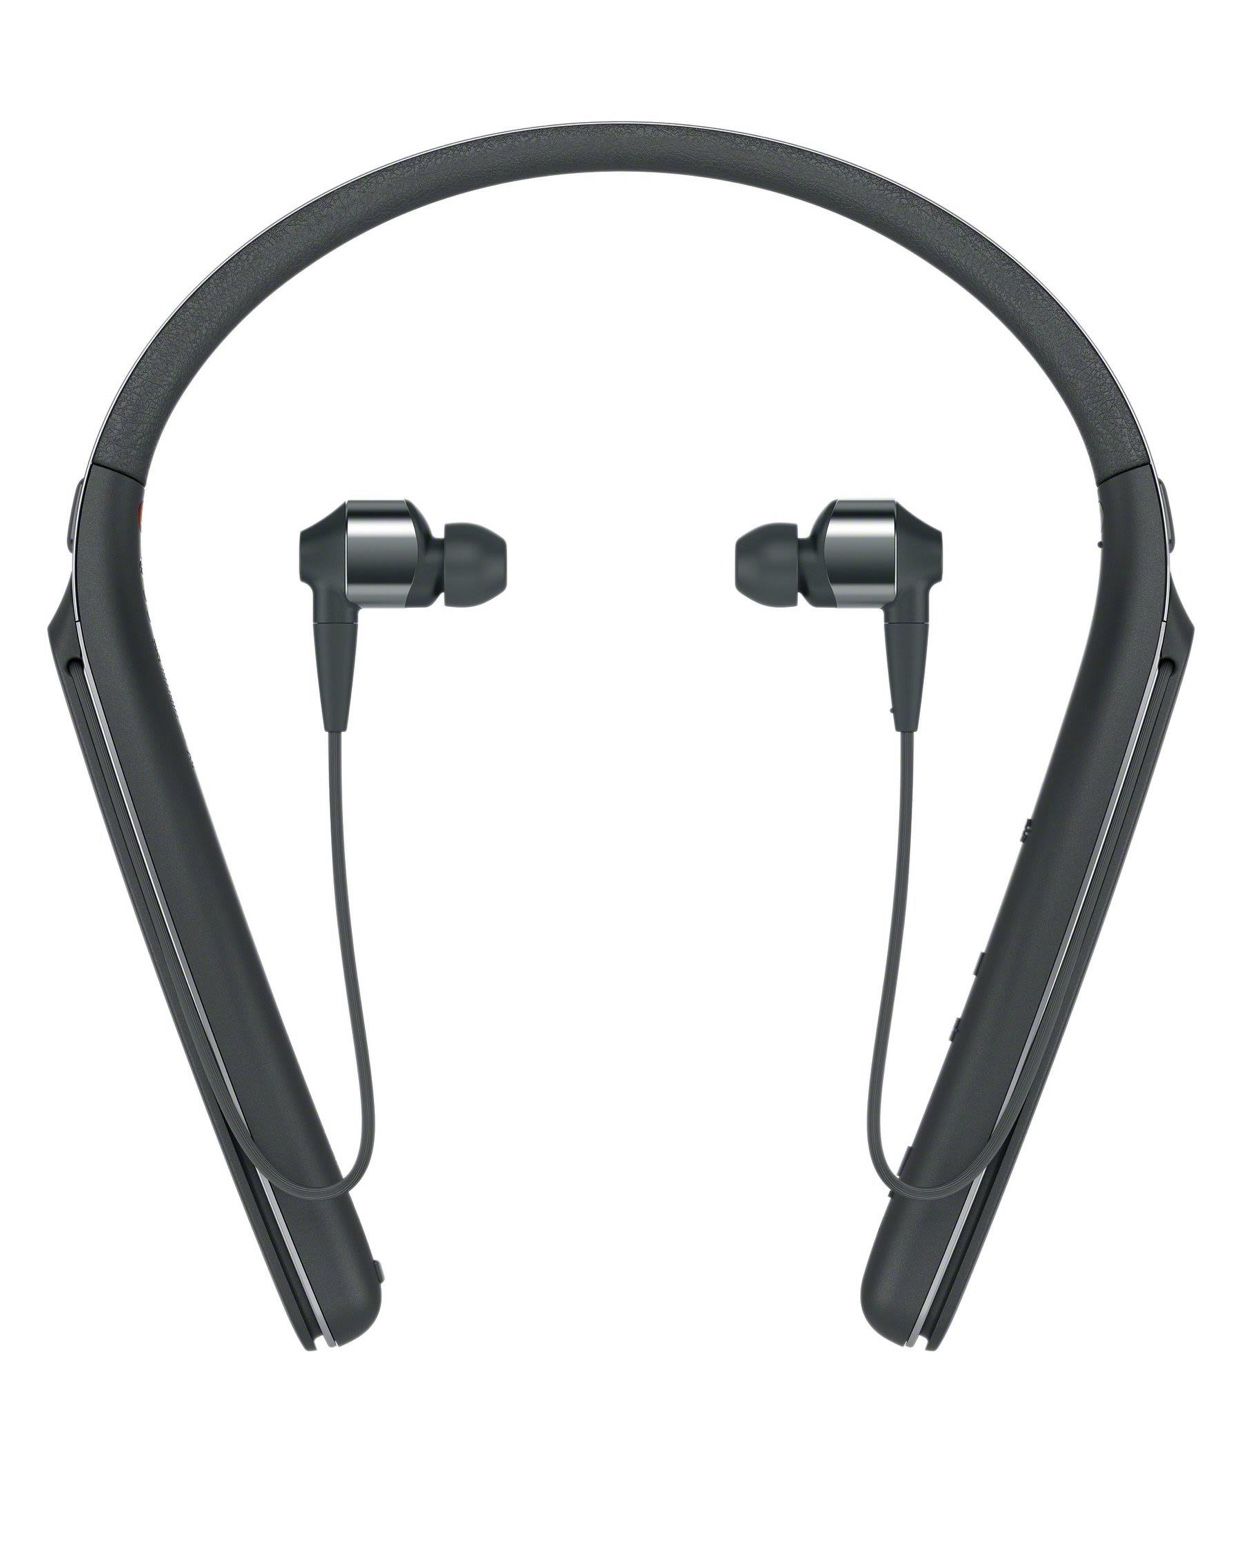 Sony WI-1000X headphones